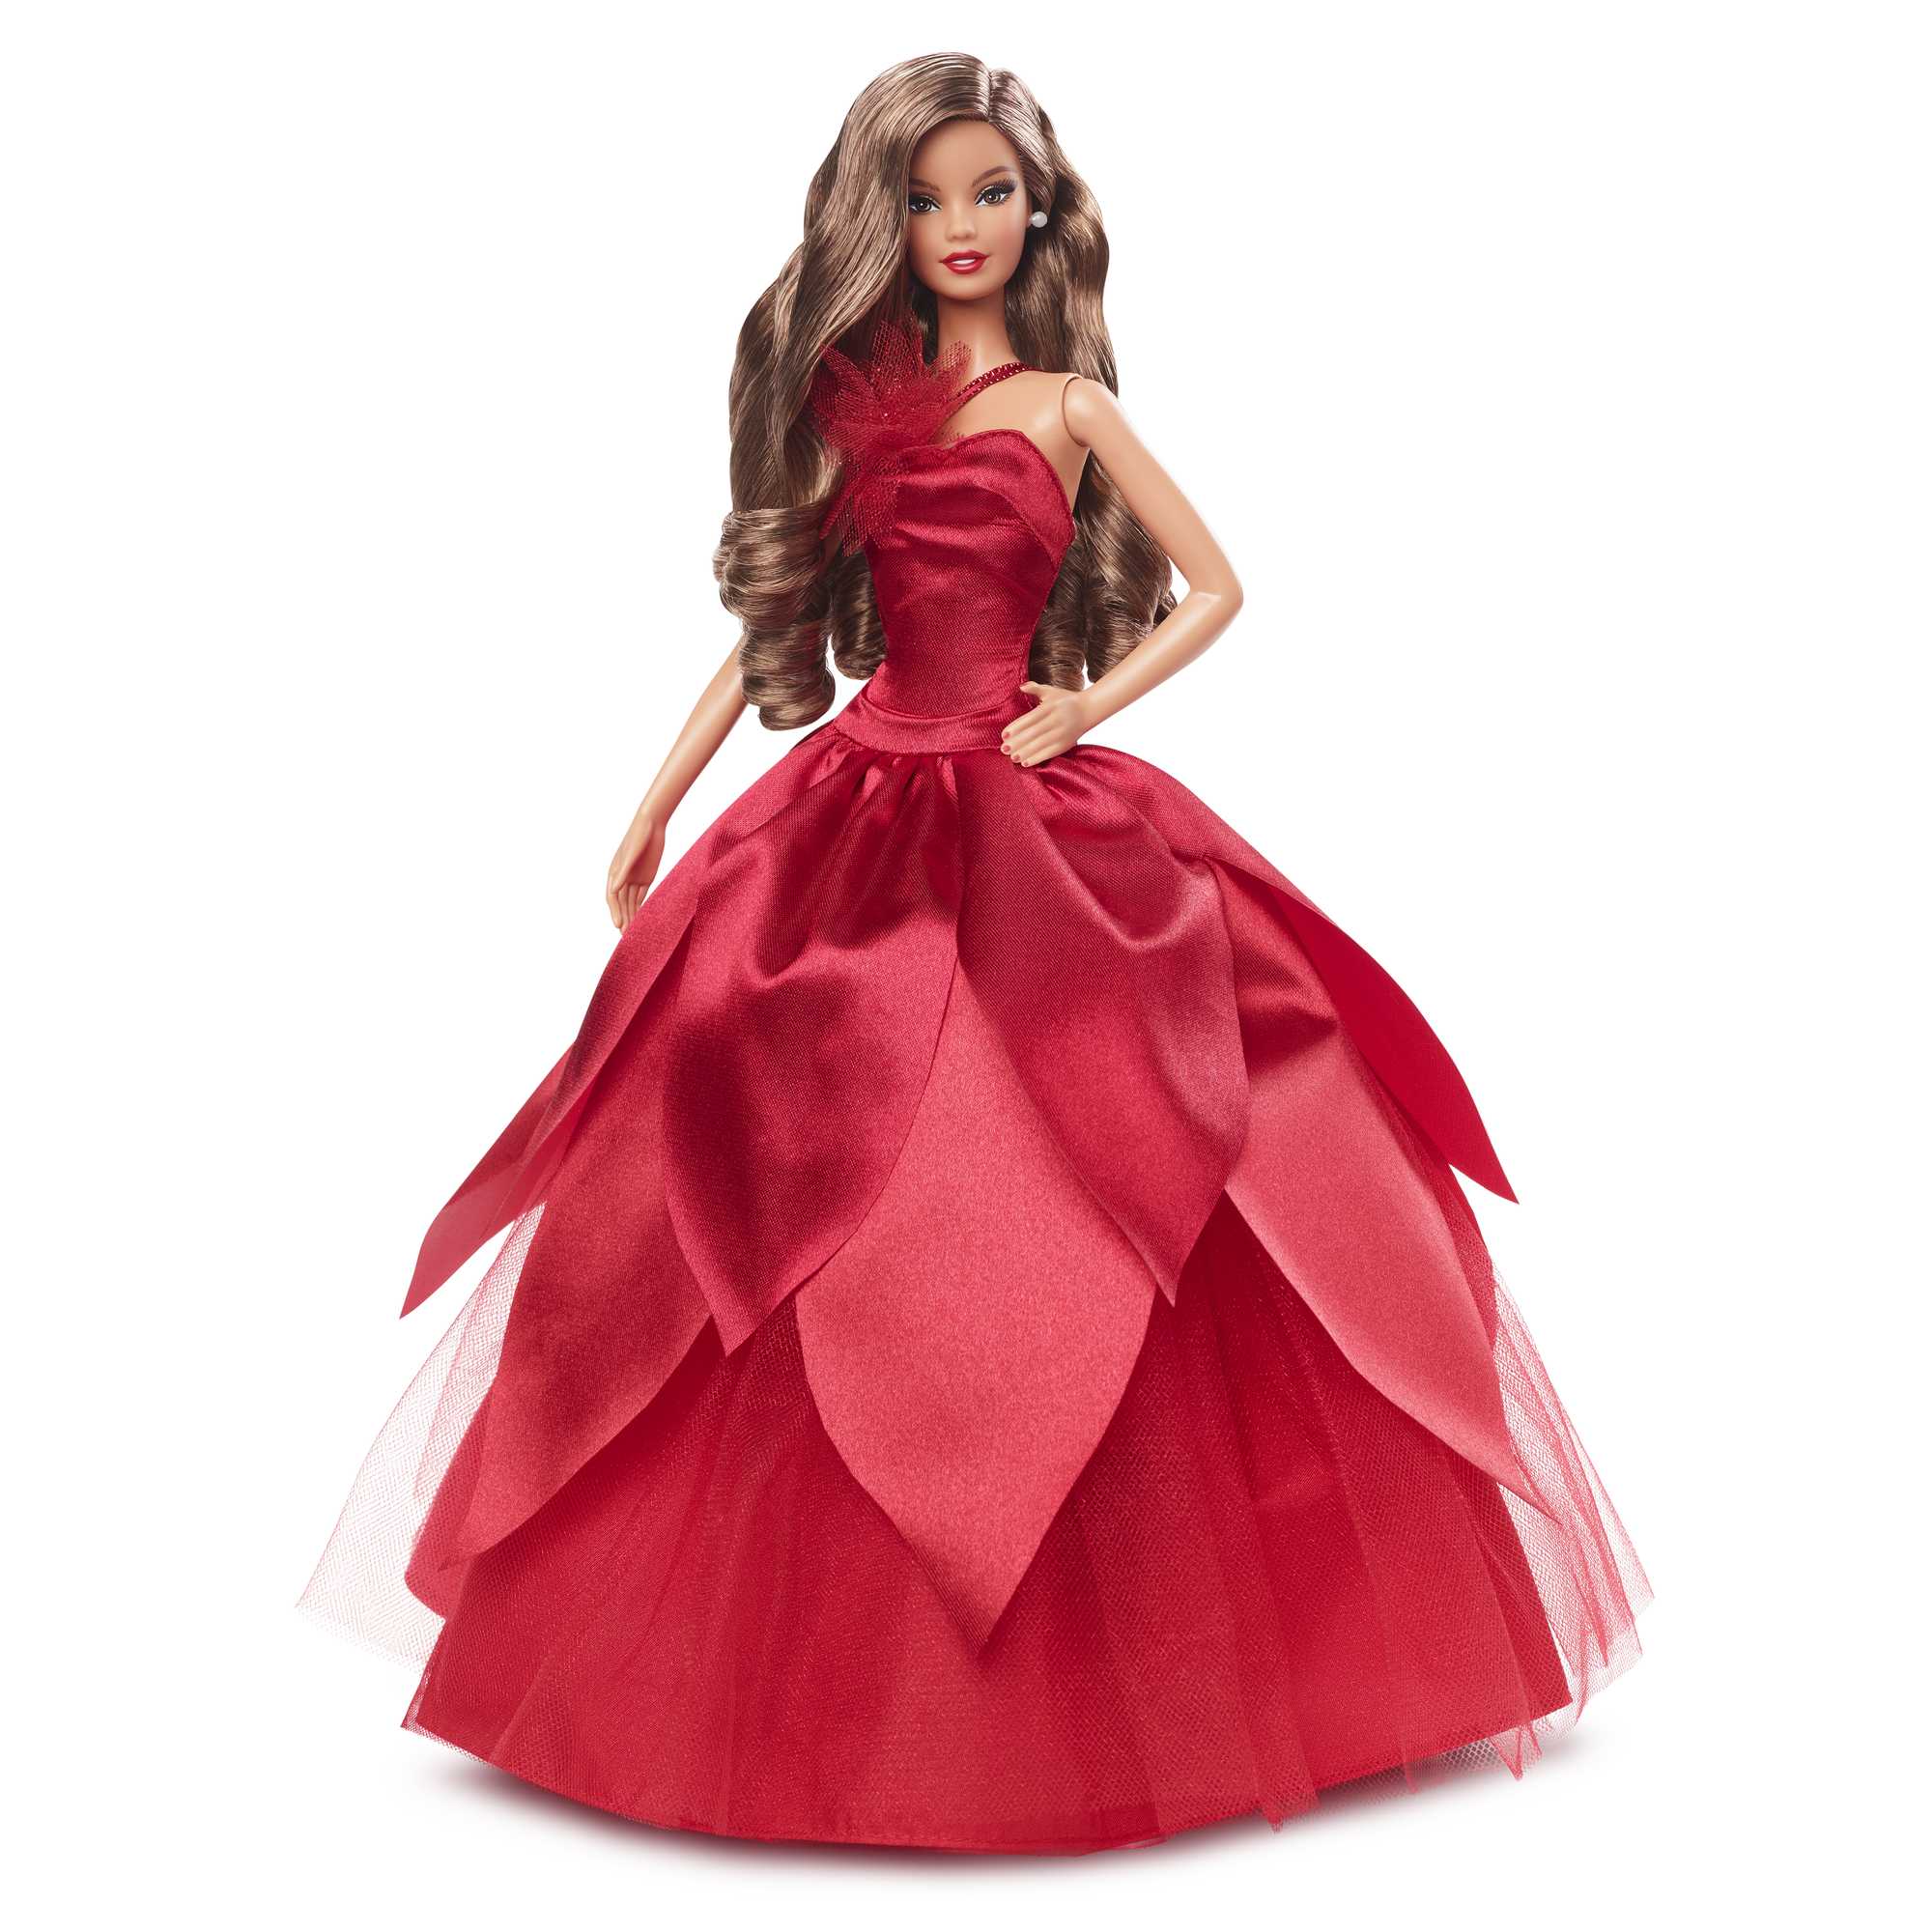 Barbie – Poupée Barbie Joyeux Noël 2022 – Châtain